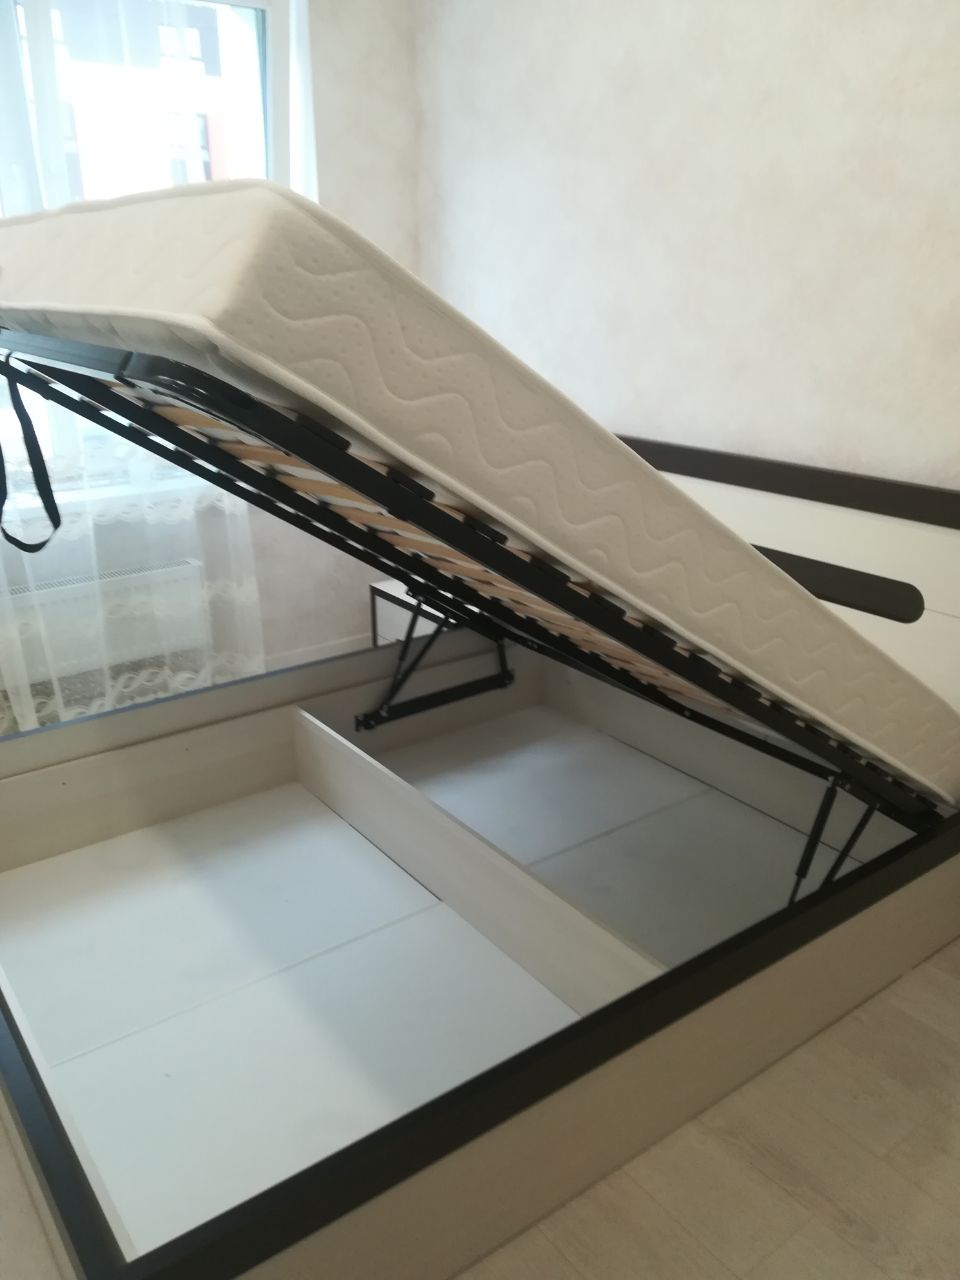 Полутораспальная кровать "Альба" 120 х 190 с подъемным механизмом цвет дуб сантана